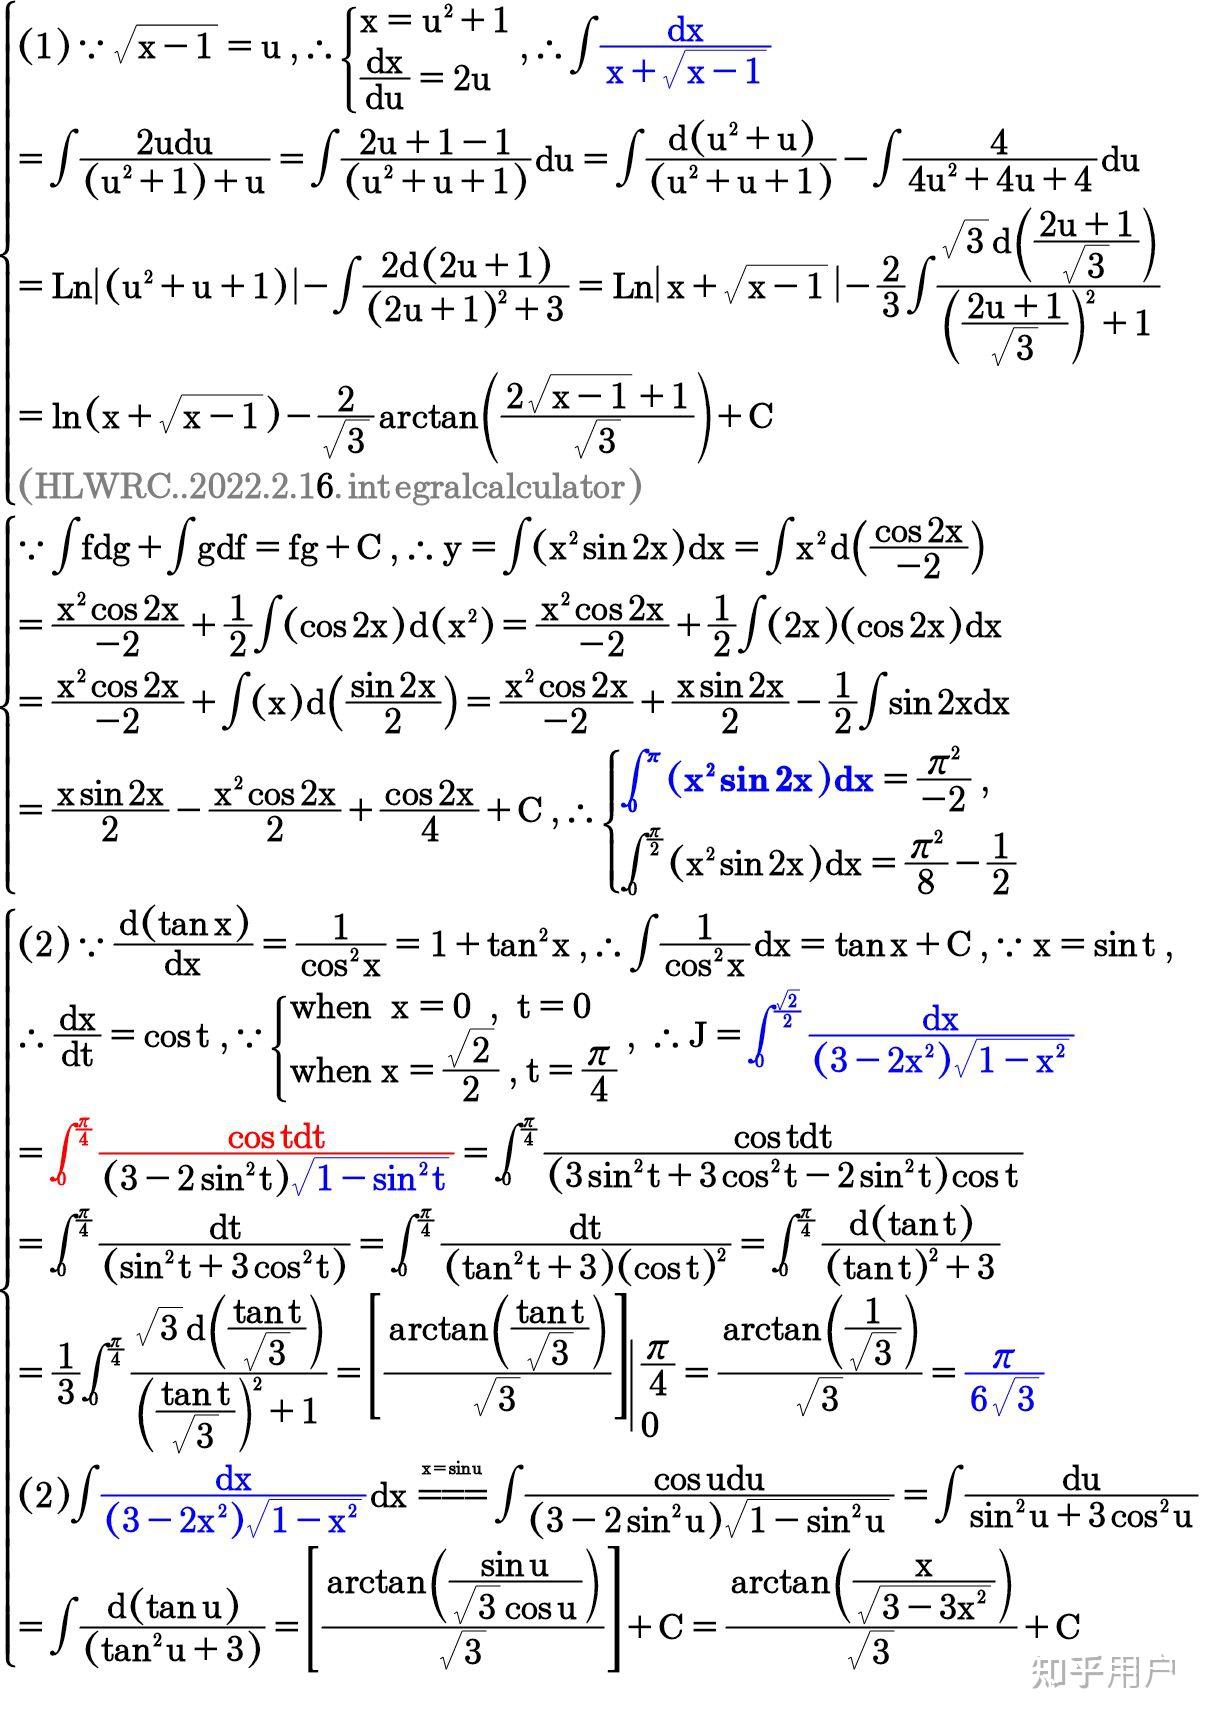 高数数学微积分分部积分法求解不定积分x2sin2xdx定积分区间是0xπ